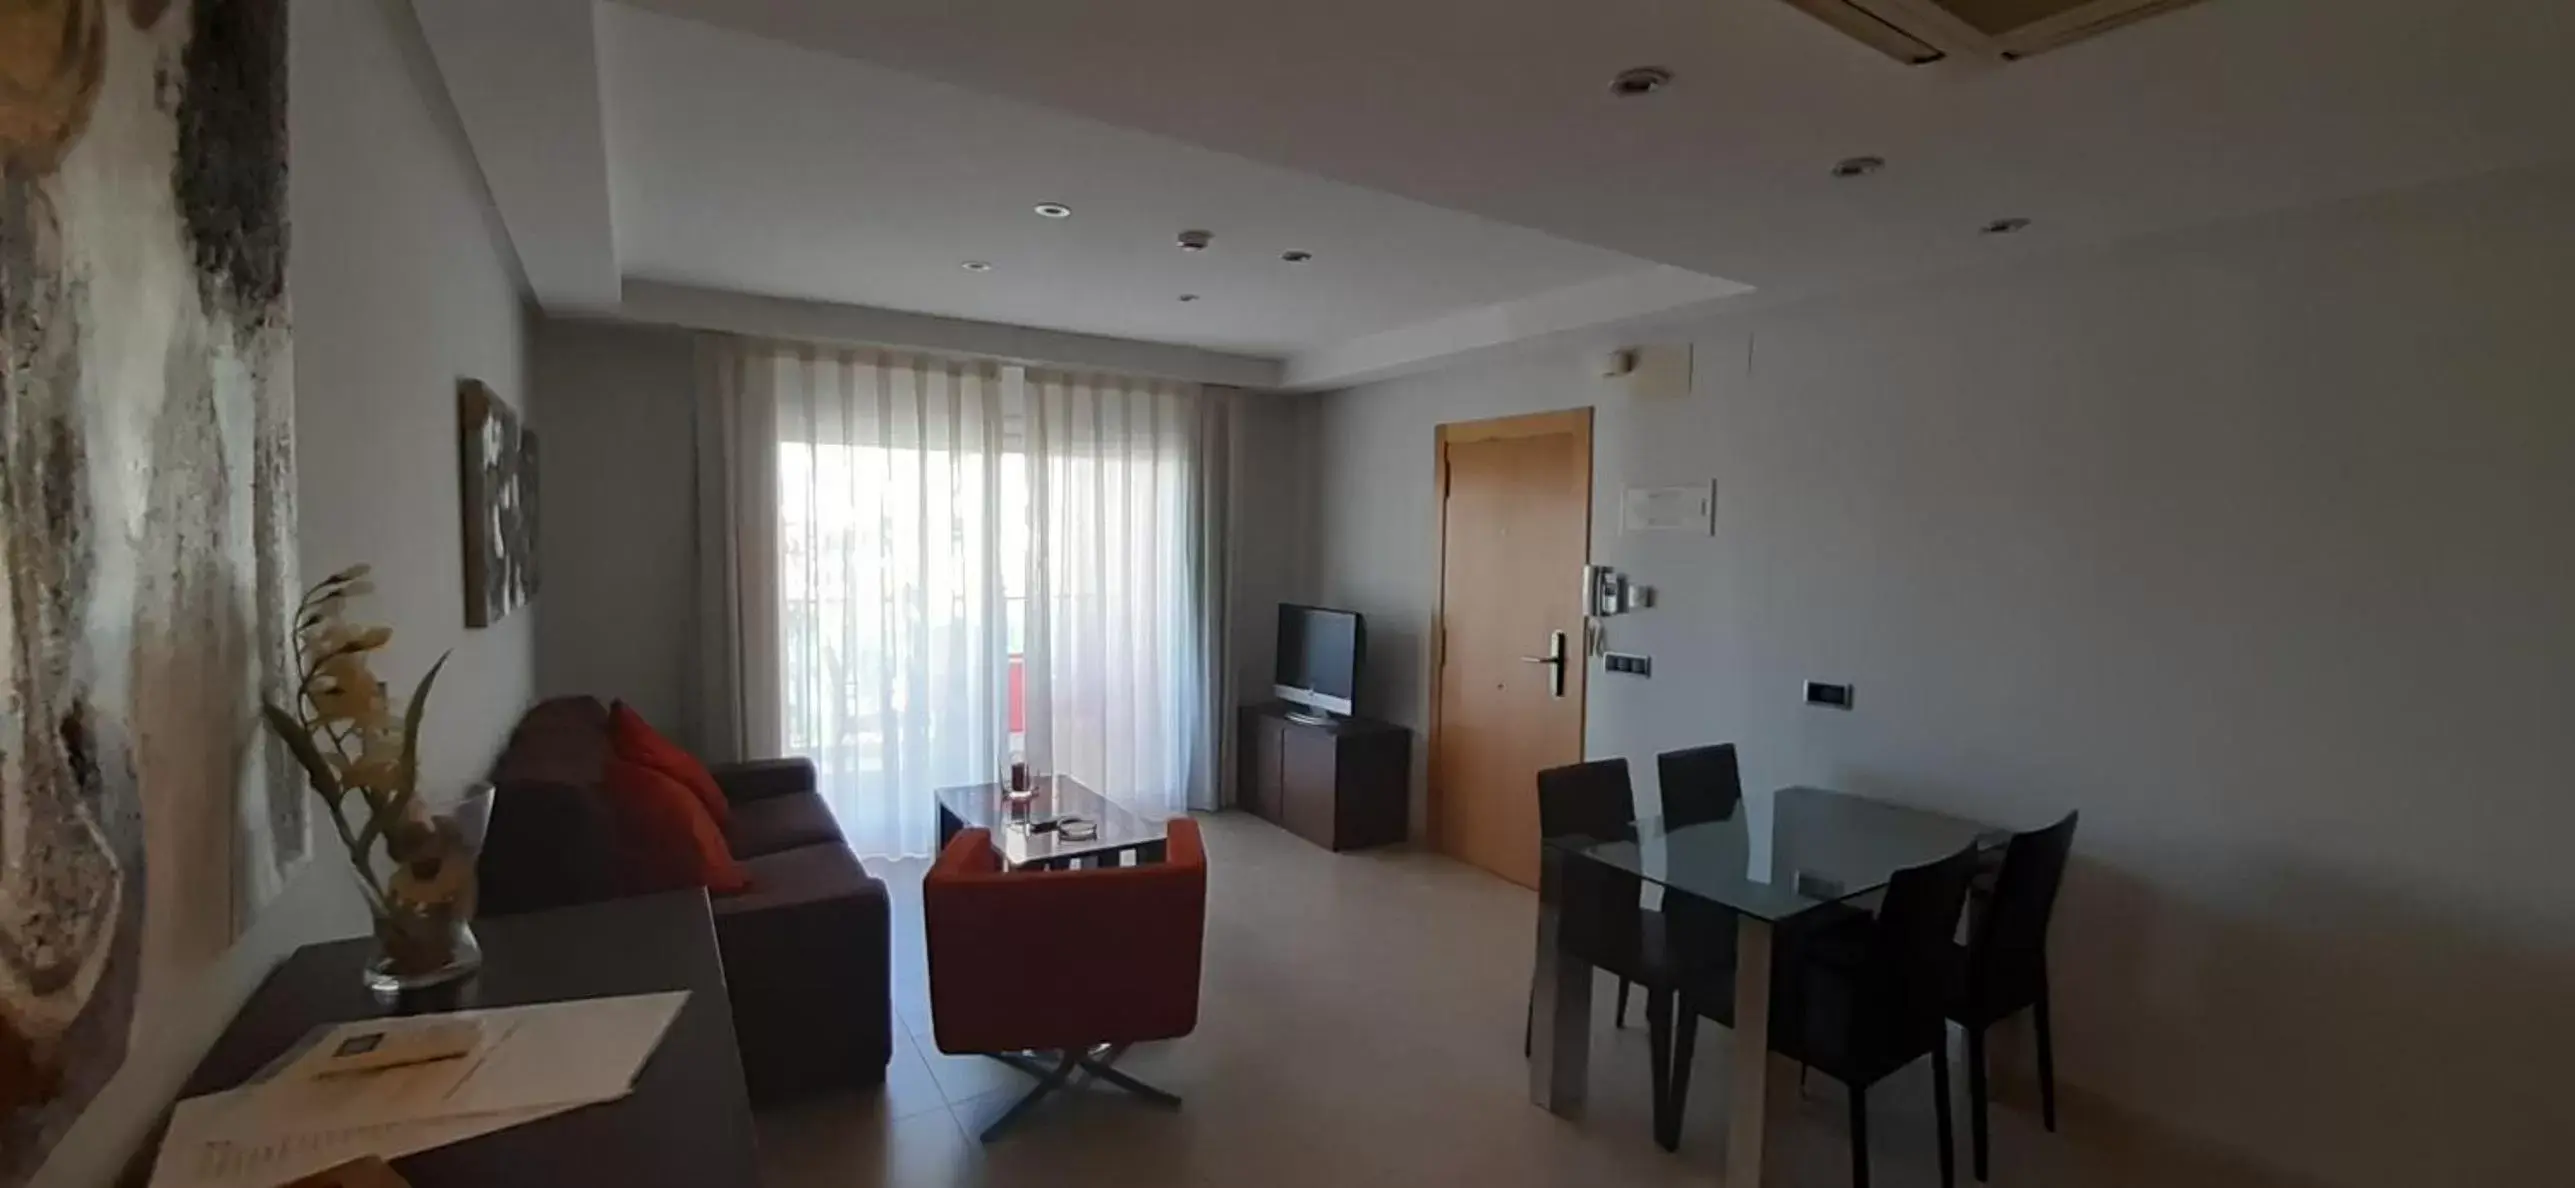 Living room, Dining Area in Apartamentos Flamingo Hills